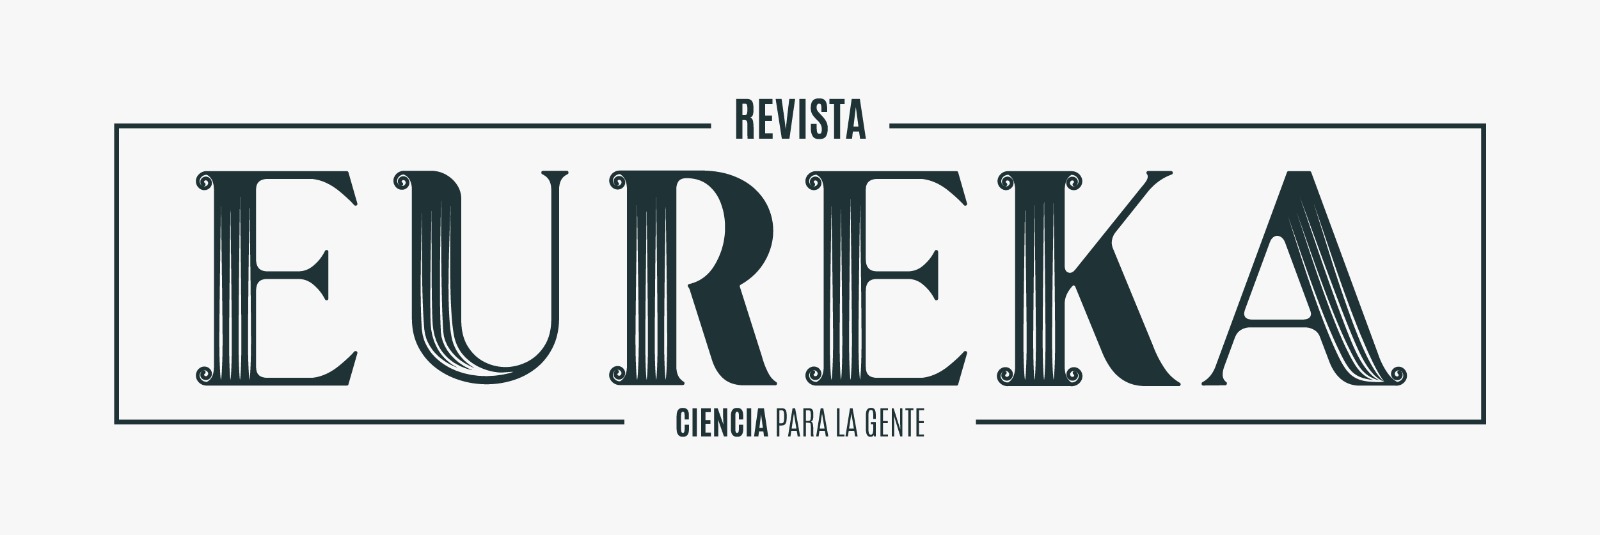 Eureka - logo